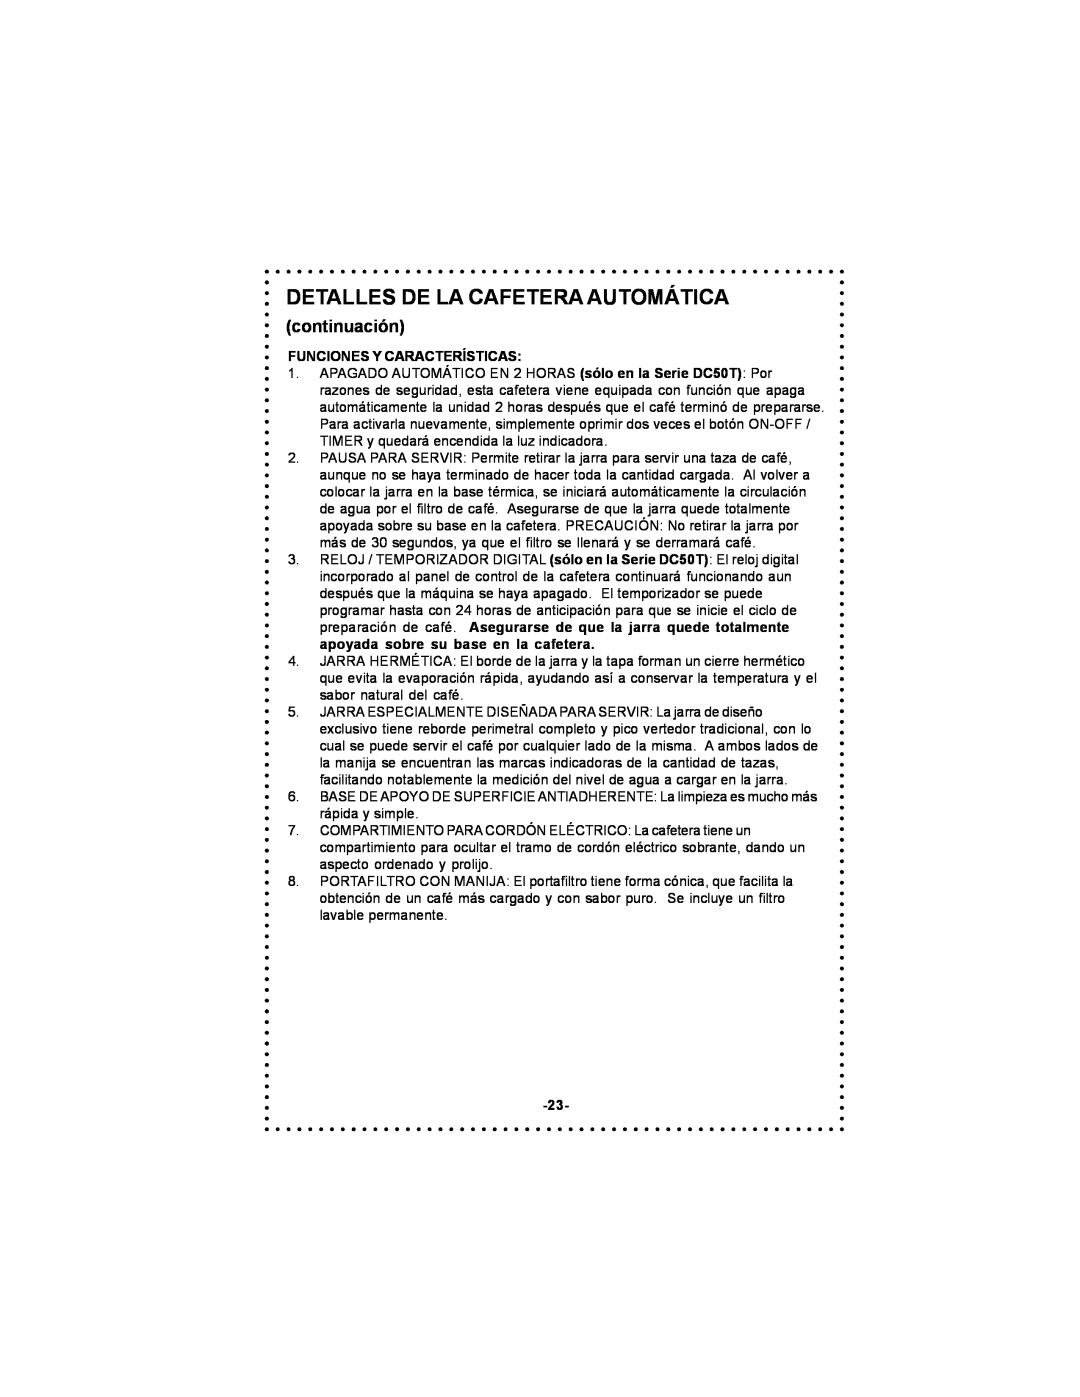 DeLonghi DC50T instruction manual Detalles De La Cafetera Automática, continuación, Funciones Y Características 